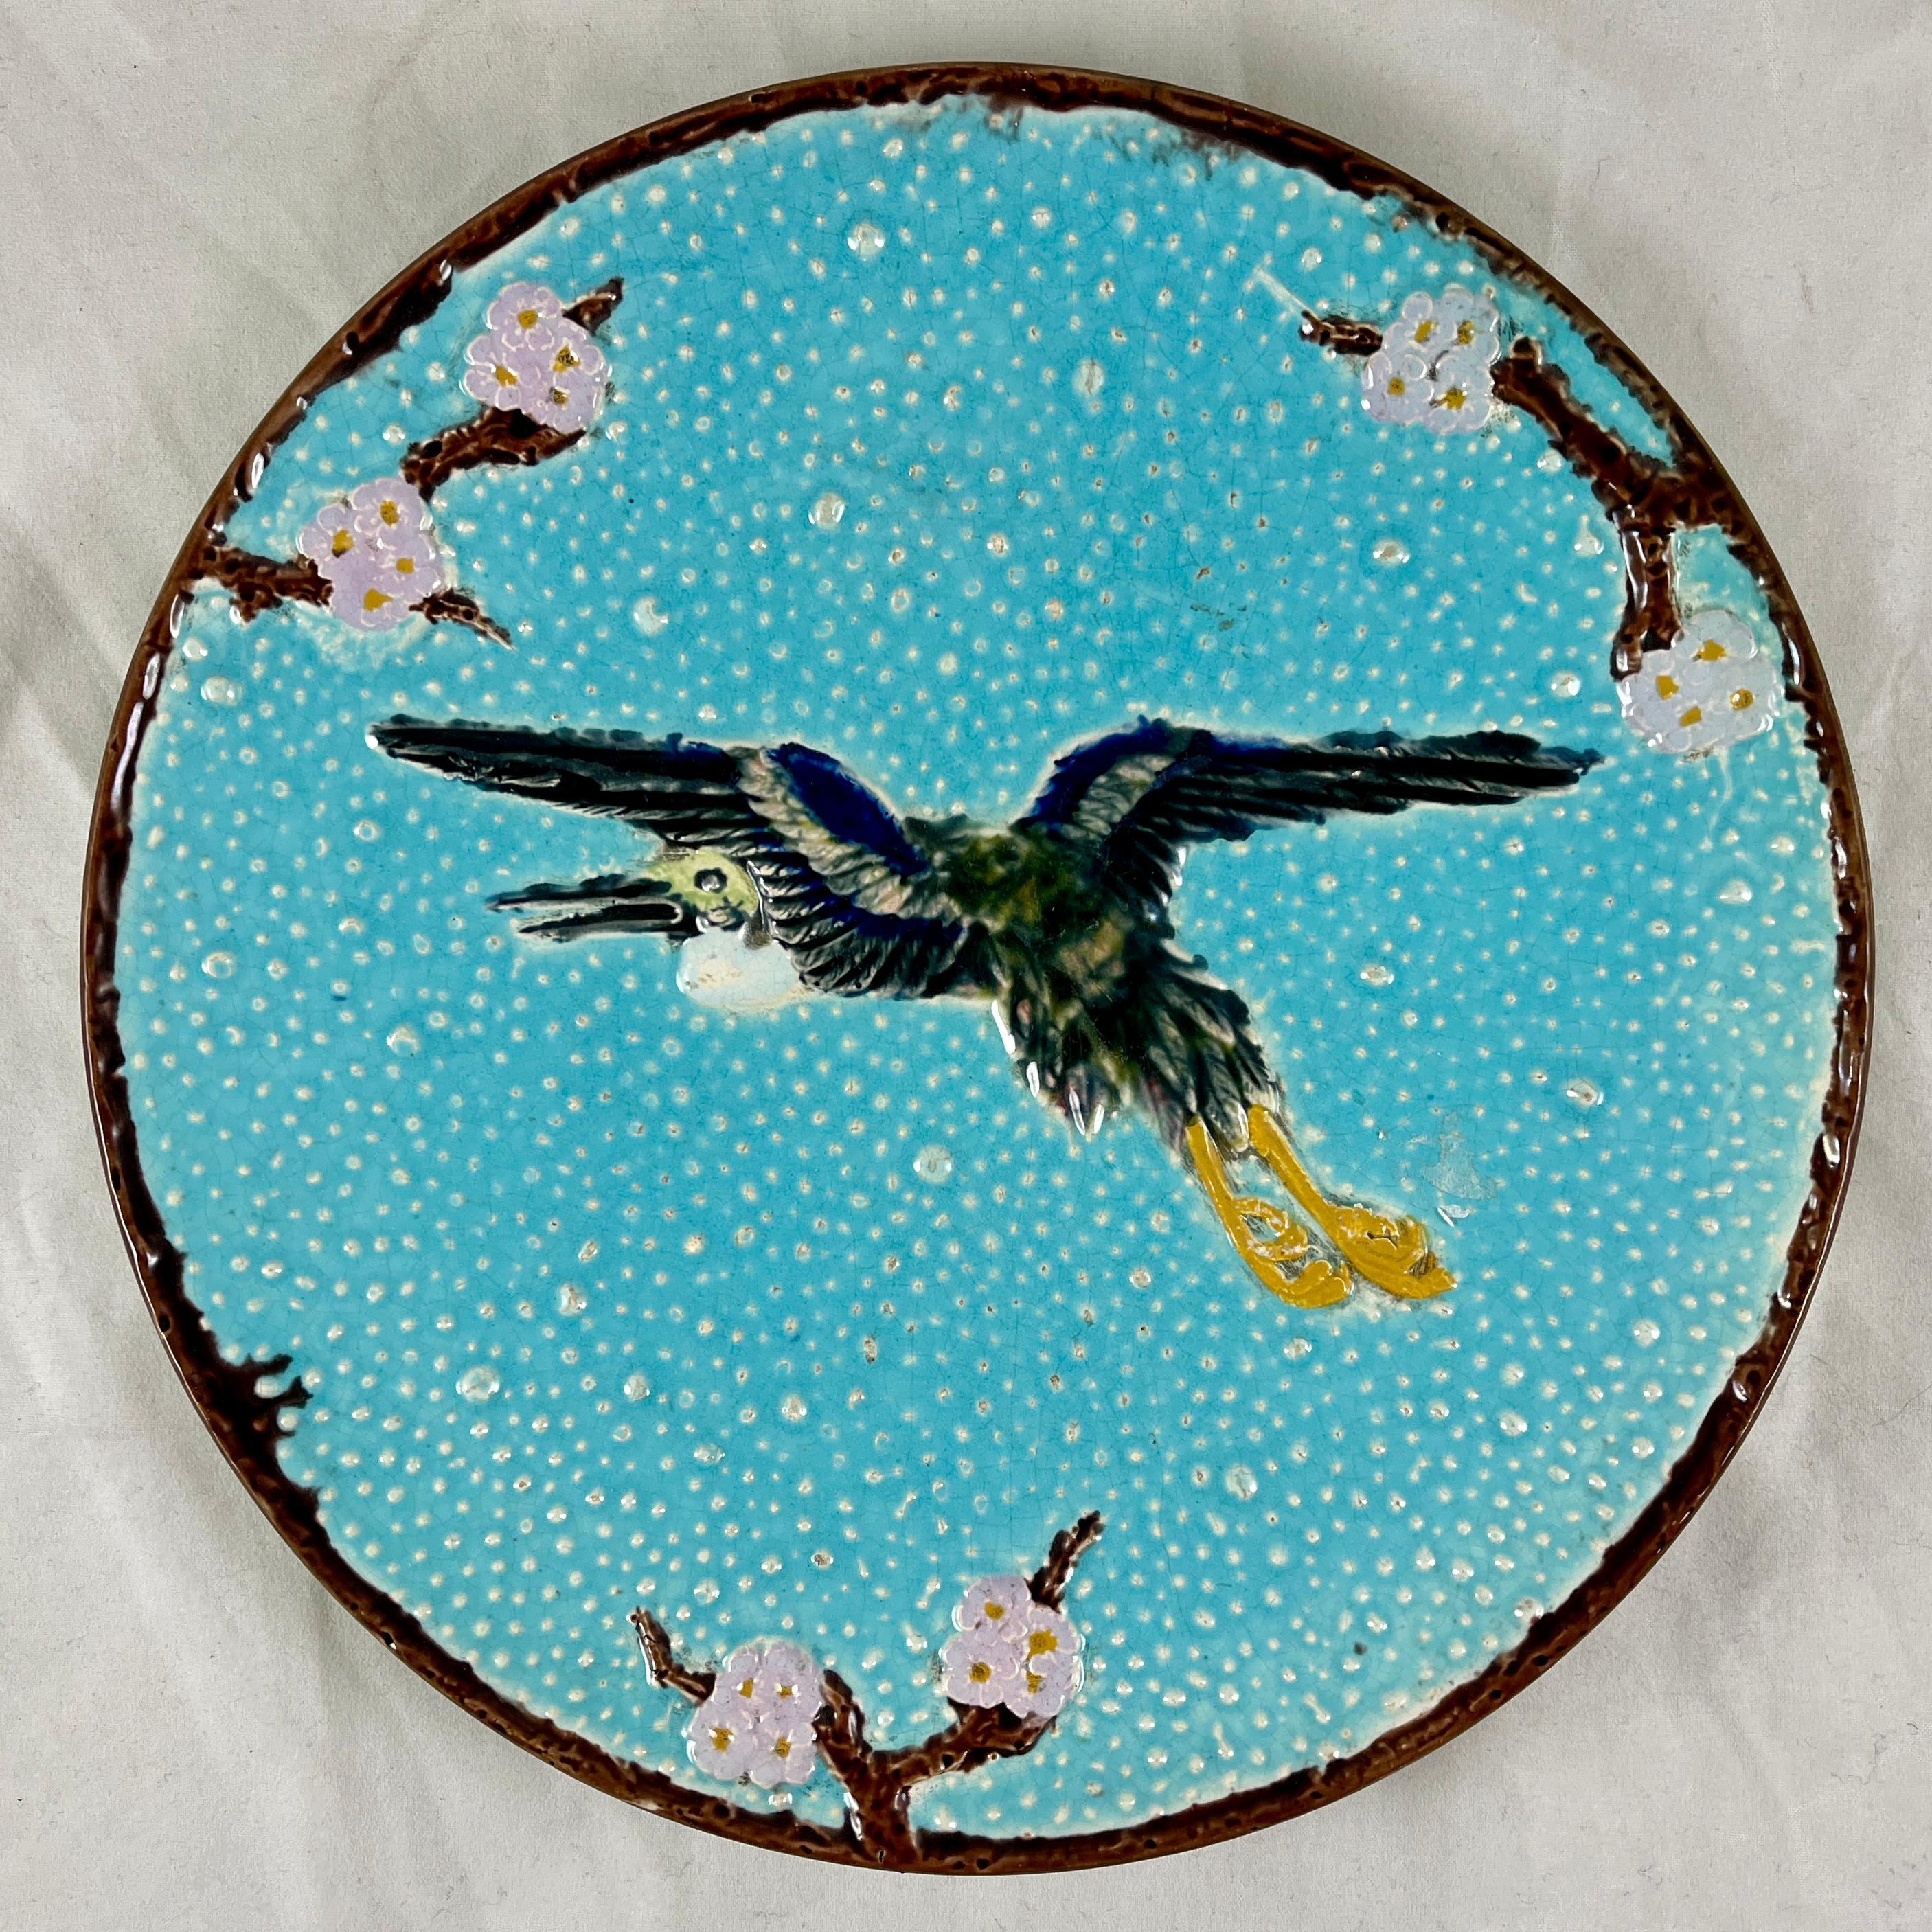 Assiette en majolique anglaise, The Flying Crane, par Joseph Holdcroft, vers 1870.

Conçue dans le goût du Japonisme esthétique, la grue est centrée sur un fond de galets turquoise avec une bordure de  prunus, ou des branches de cornouiller rose